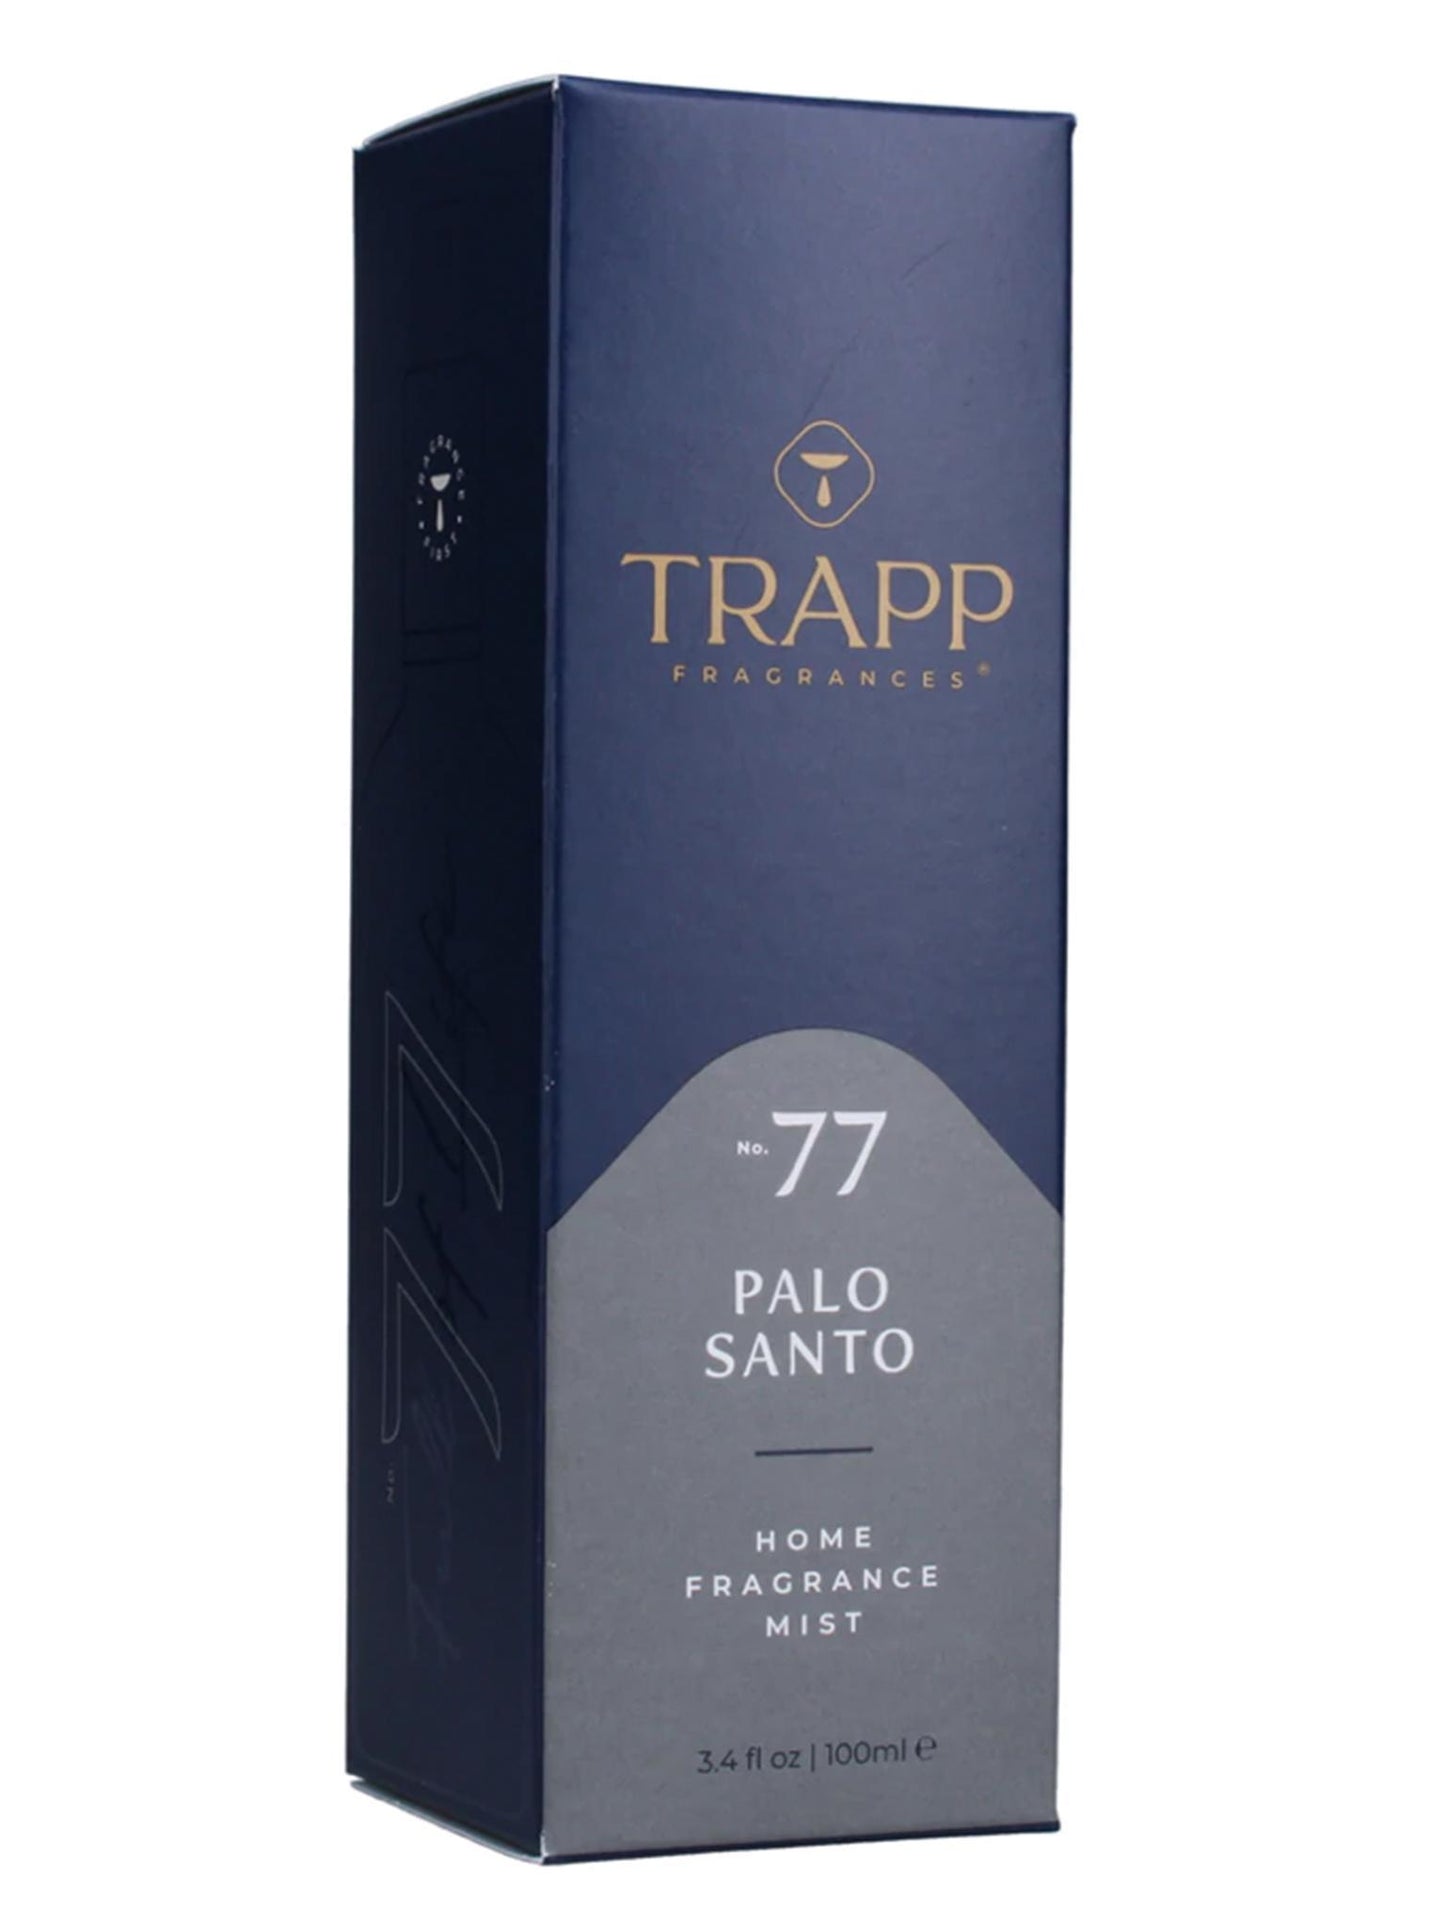 Trapp Palo Santo Fragrance Mist Room Spray No. 77